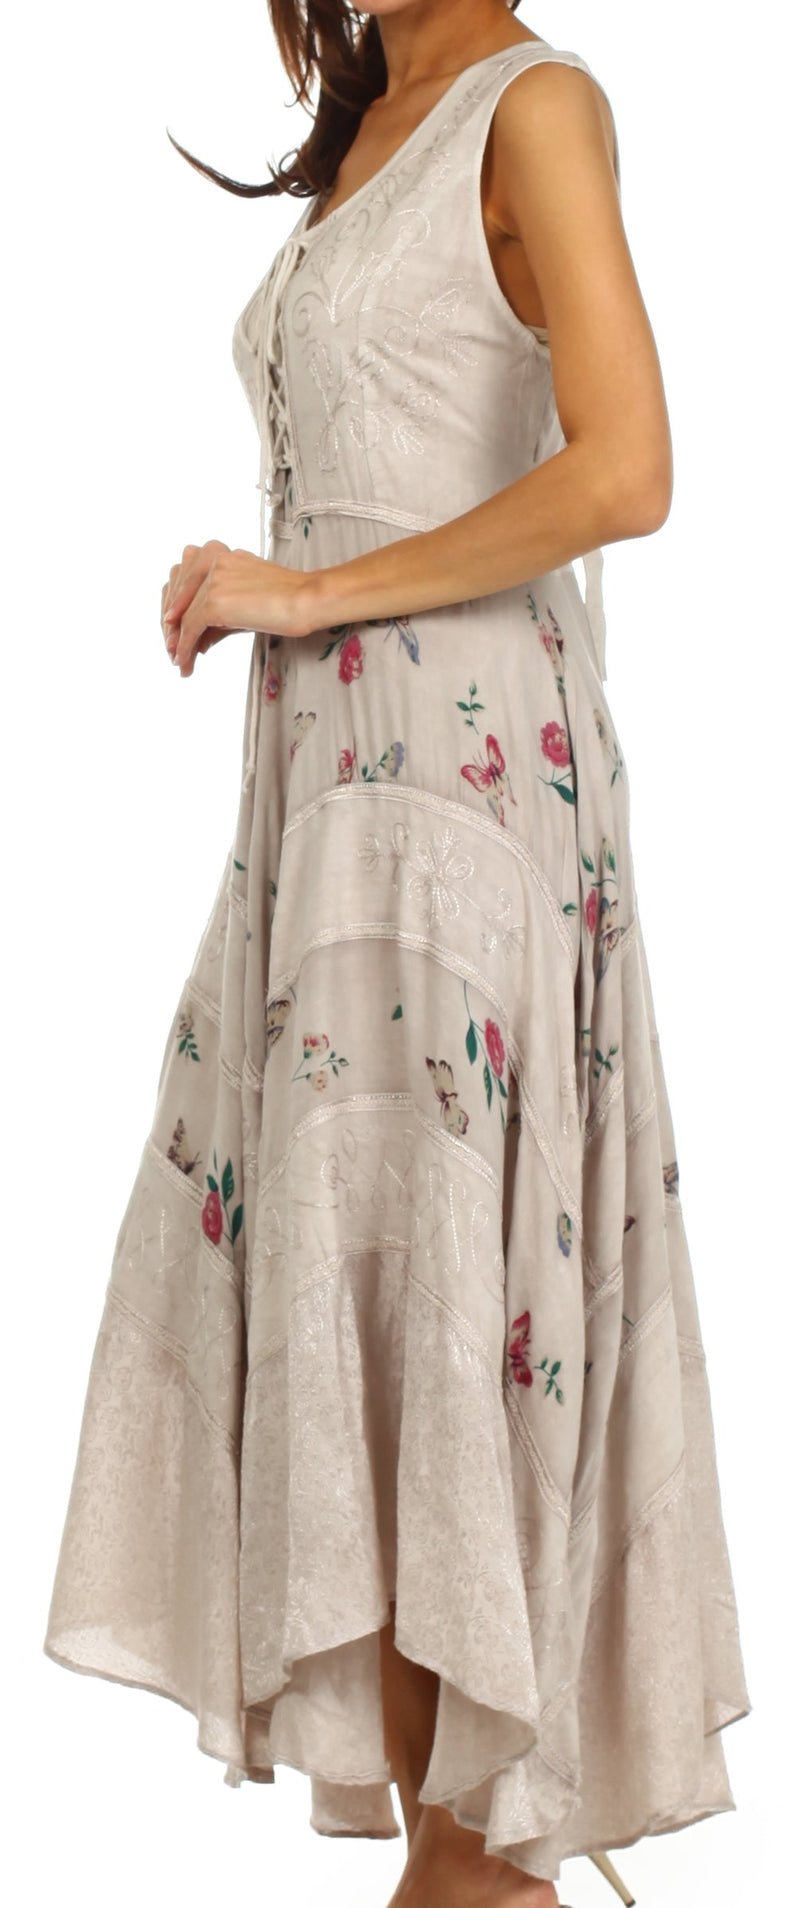 Sakkas Garden Goddess Corset Style Dress